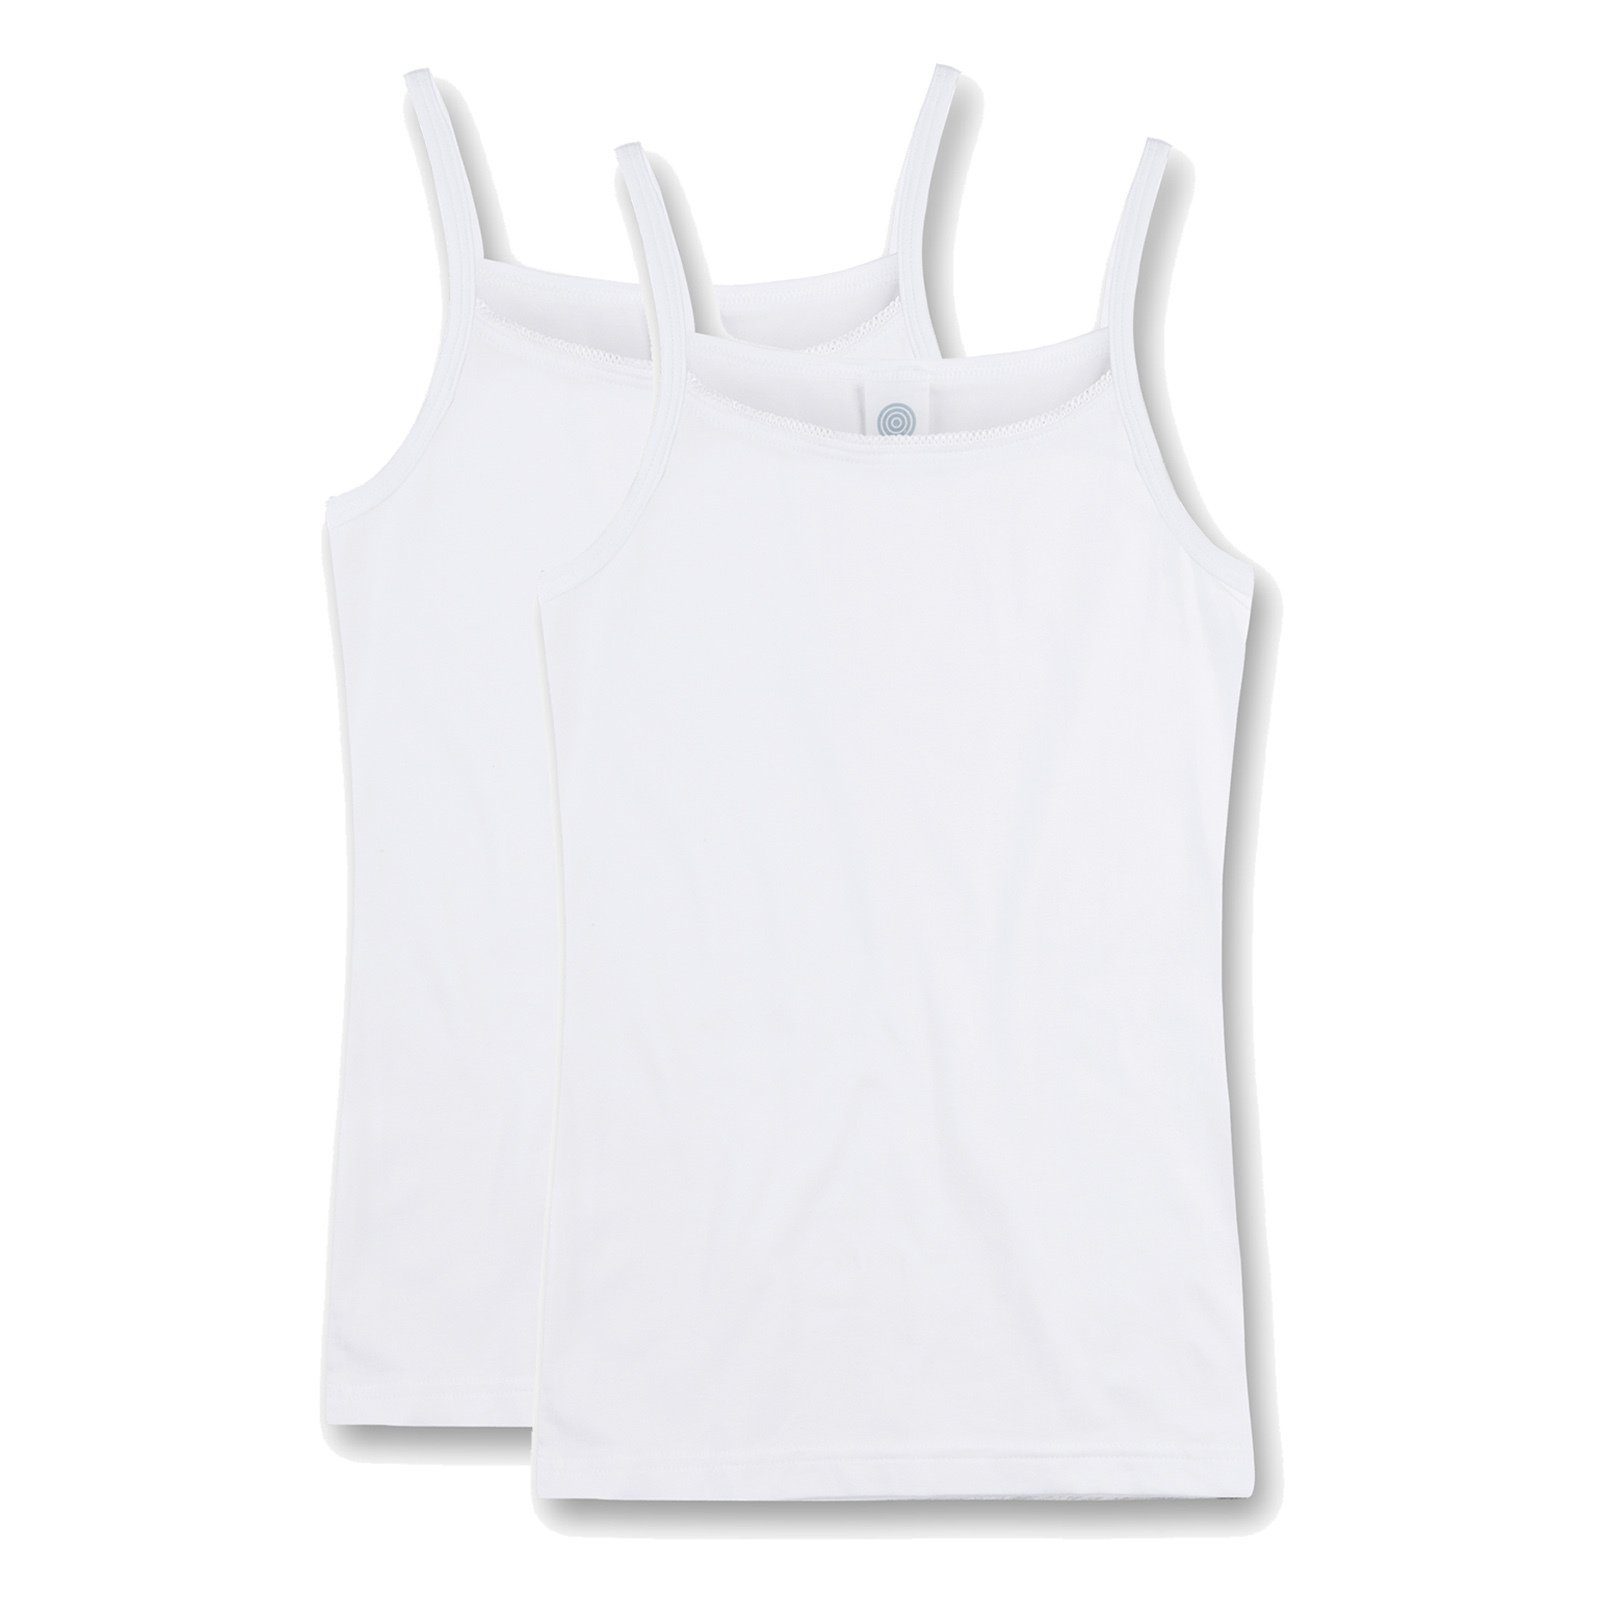 Sanetta Unterhemd Mädchen Unterhemd, 2er Pack - Shirt ohne Arme, Top Weiß